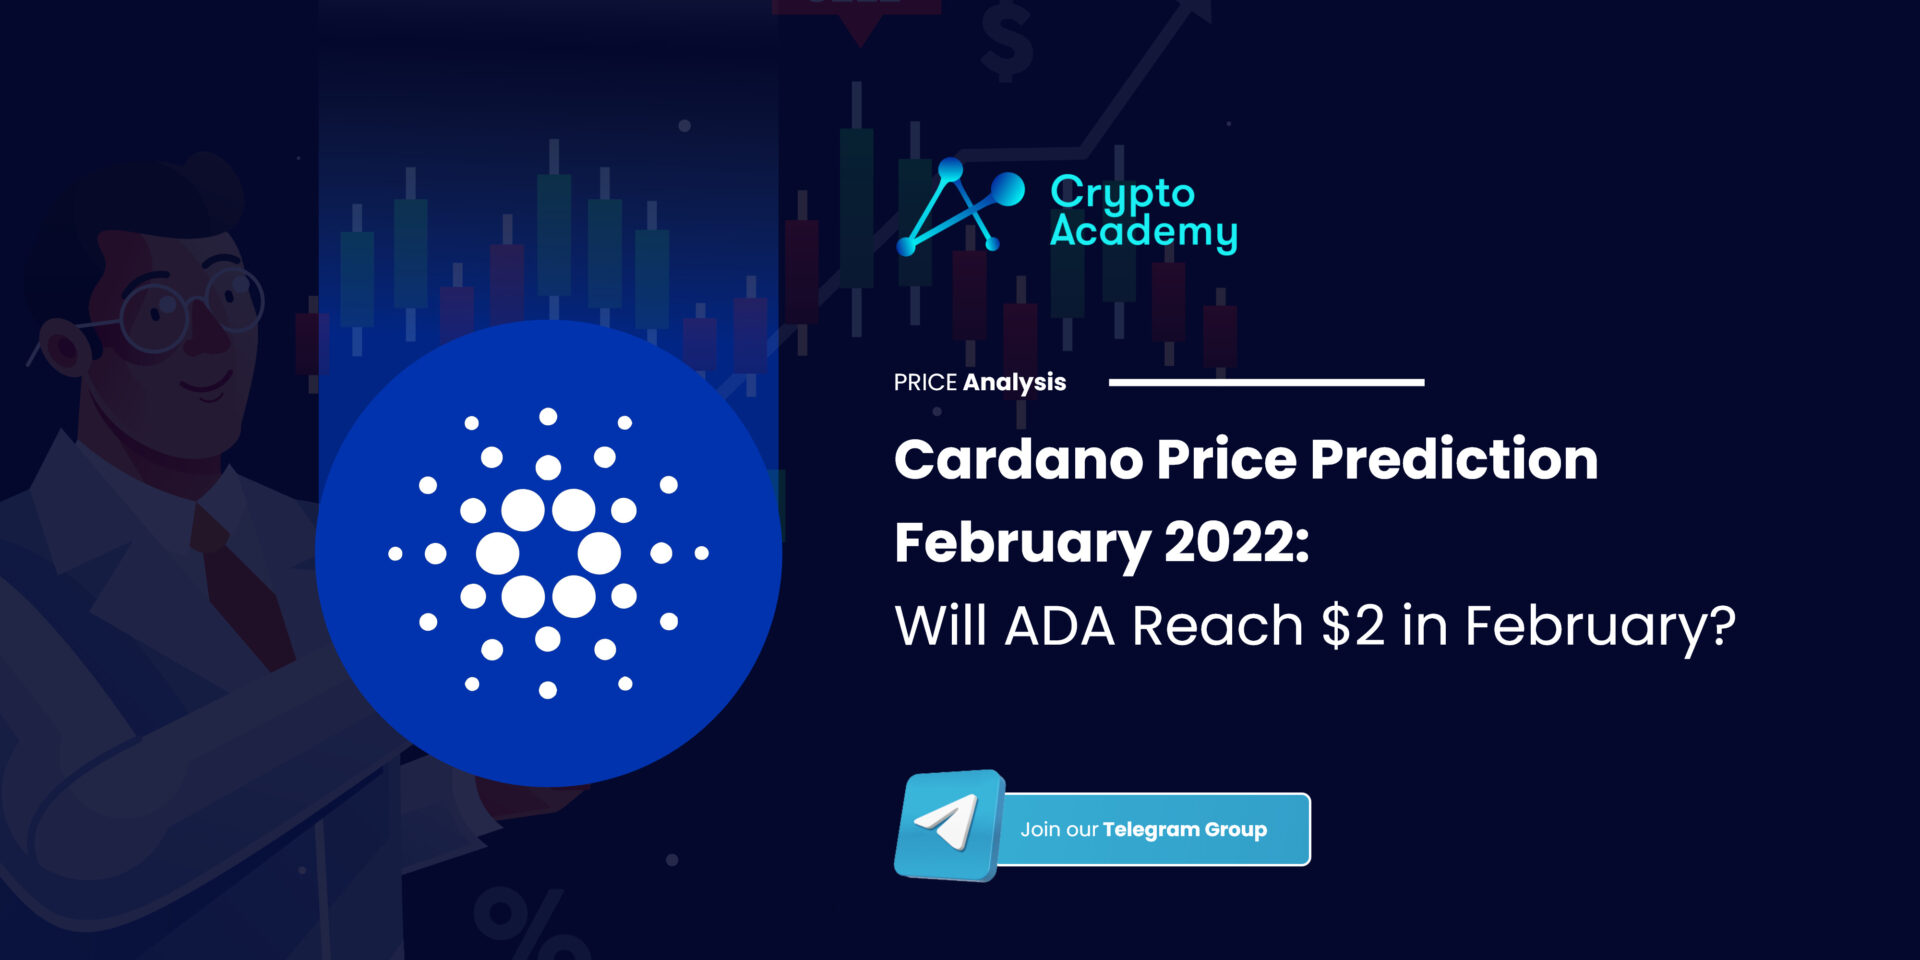 Cardano Price Prediction February 2022: Will ADA Reach $2 in February?